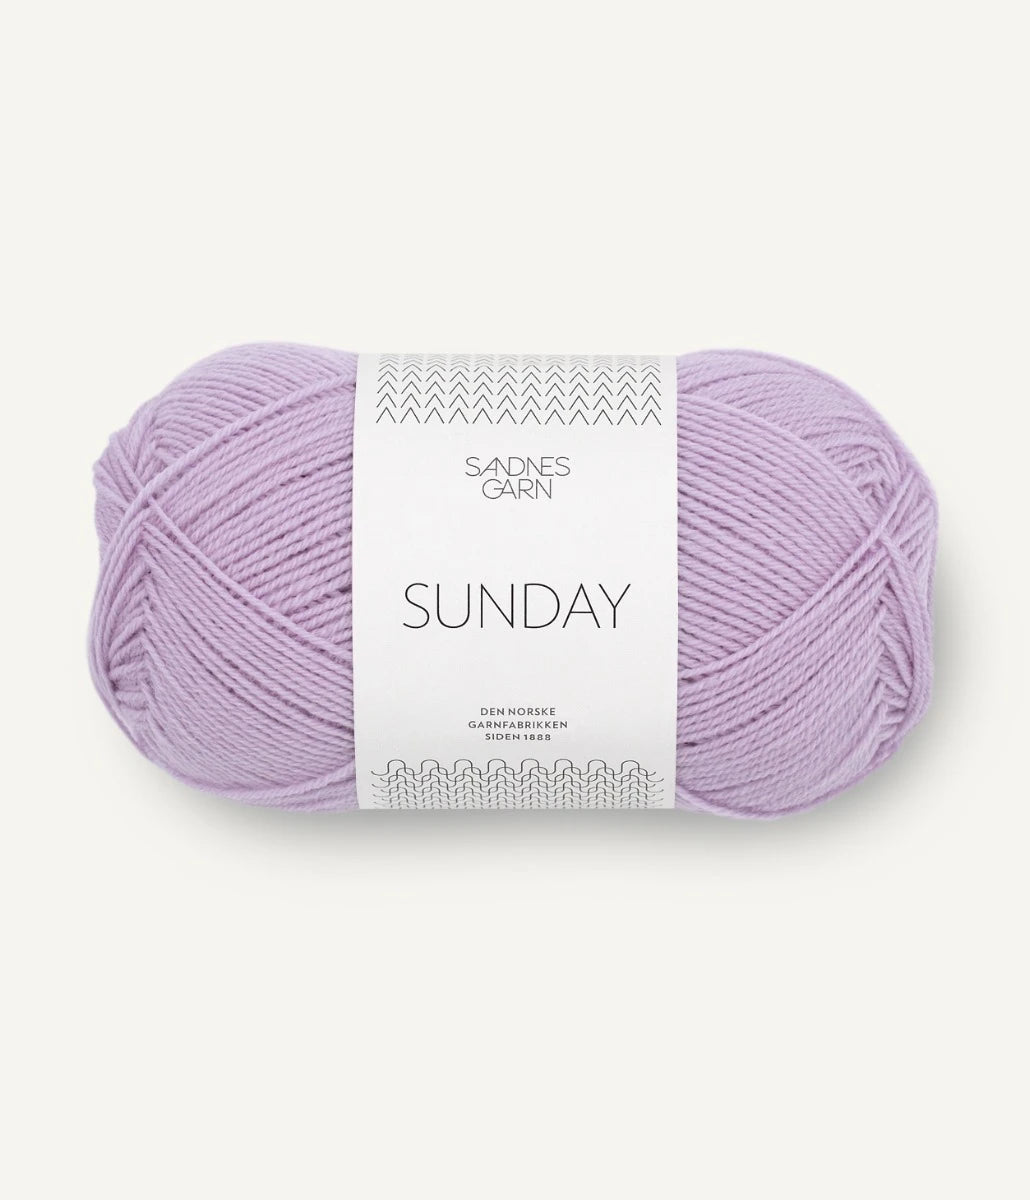 Kuvassa on Sandnes Garn Sunday lanka (yarn) värissä Lilac.